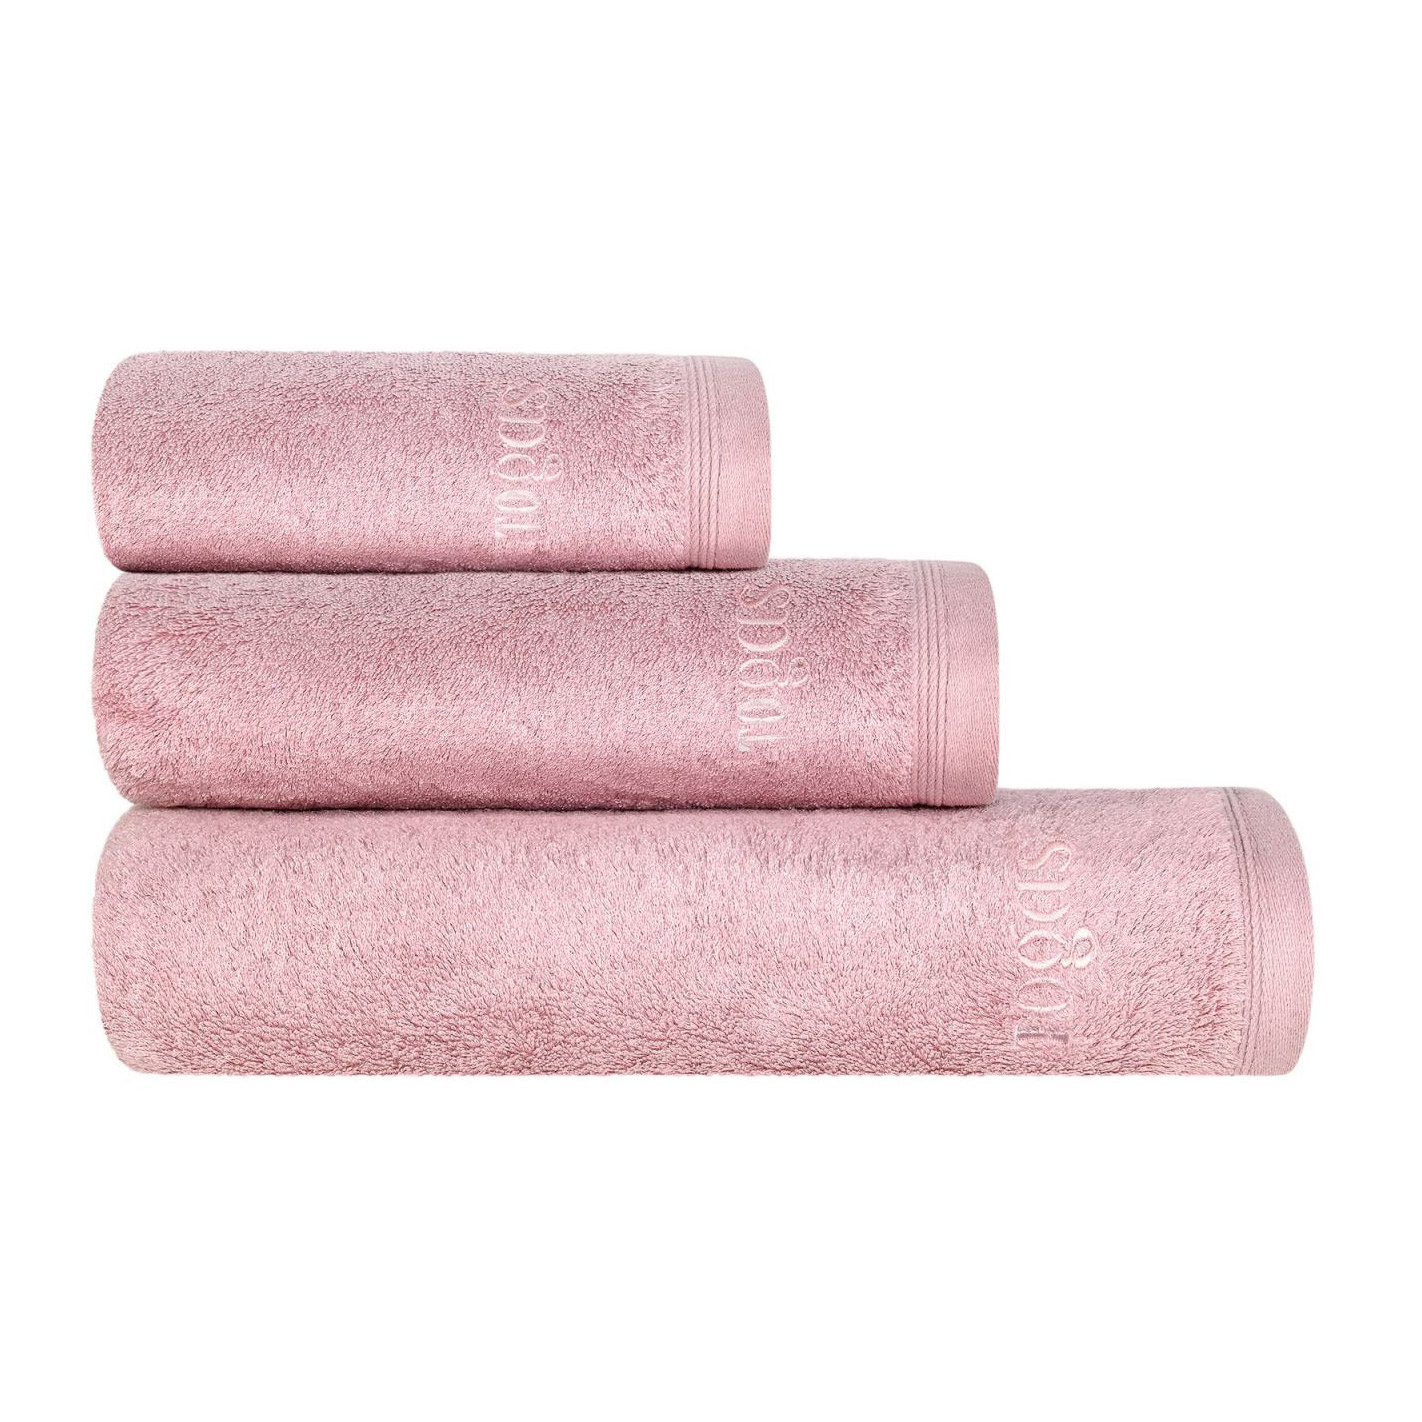 Полотенце Togas Пуатье розовое 50х100 см (10.00.01.1045) полотенце 40х60 см пуатье сливовое togas